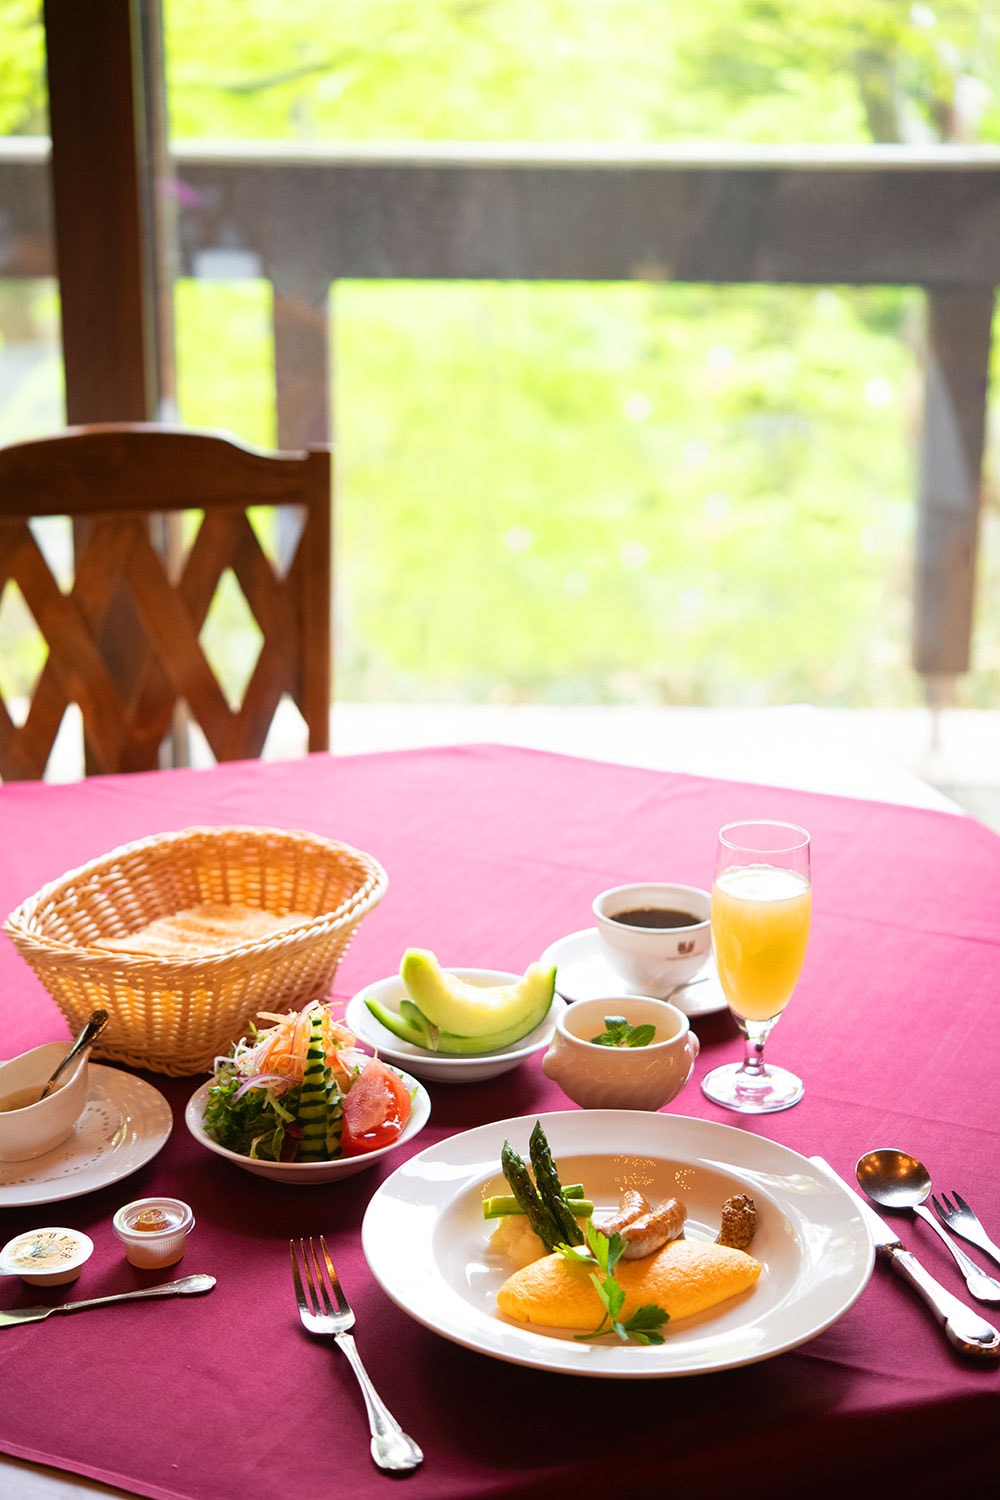 洋朝食では完熟りんごジュースや岩手県の三谷牧場の“金のヨーグルト”など、北東北の恵みを味わうことができる。